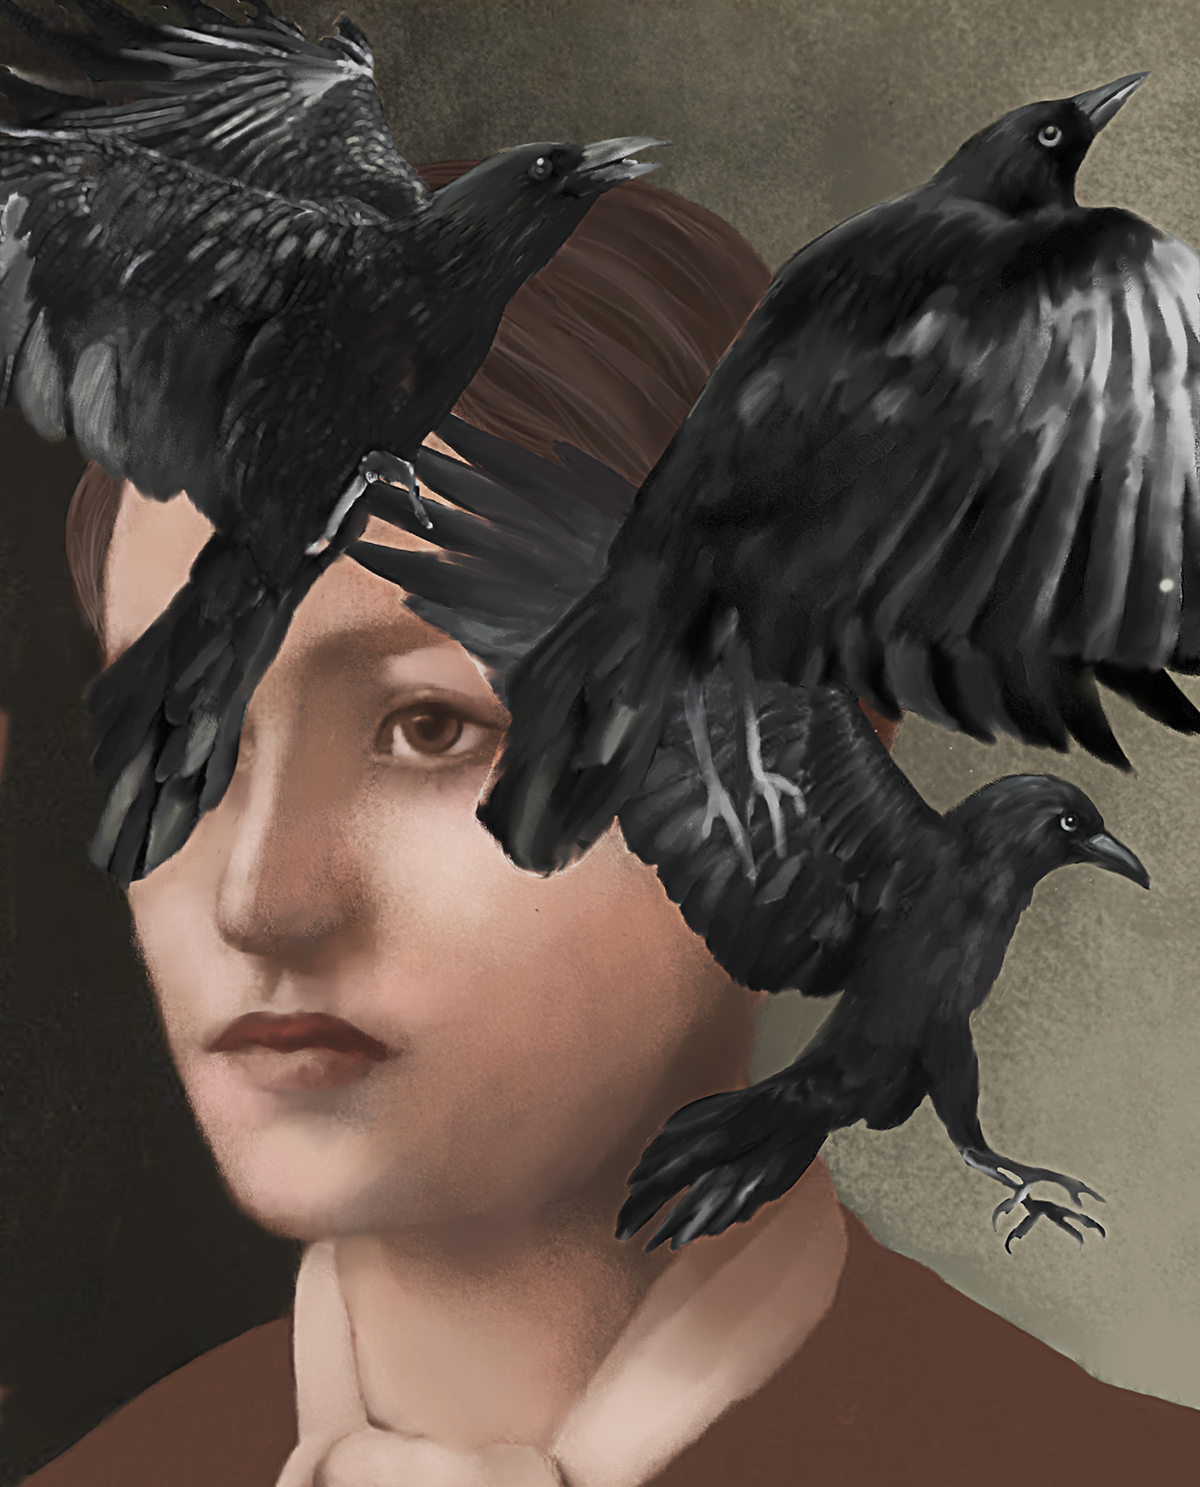 raven, Bird, Raven, Feather, Wing, Crow, Beak, Crow-like bird, Illustration, Blackbird, 